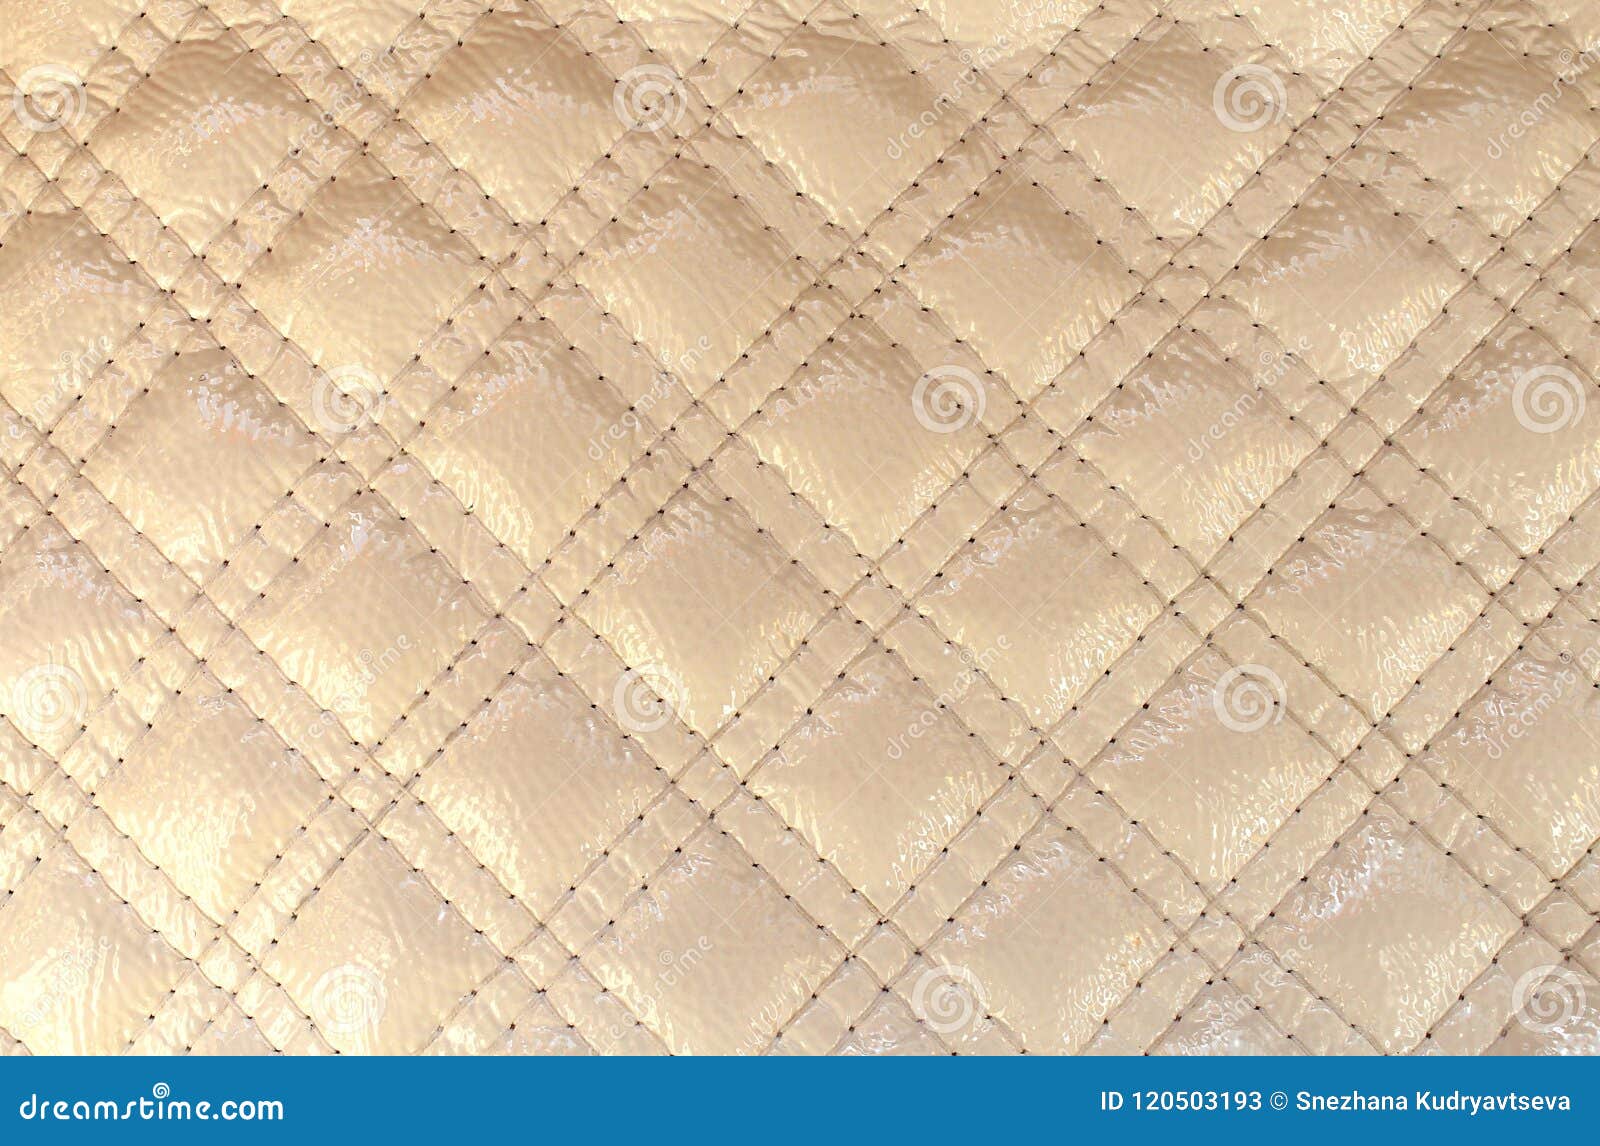 Texture o diamante da cor do marfim do couro artificial com ponto costurado